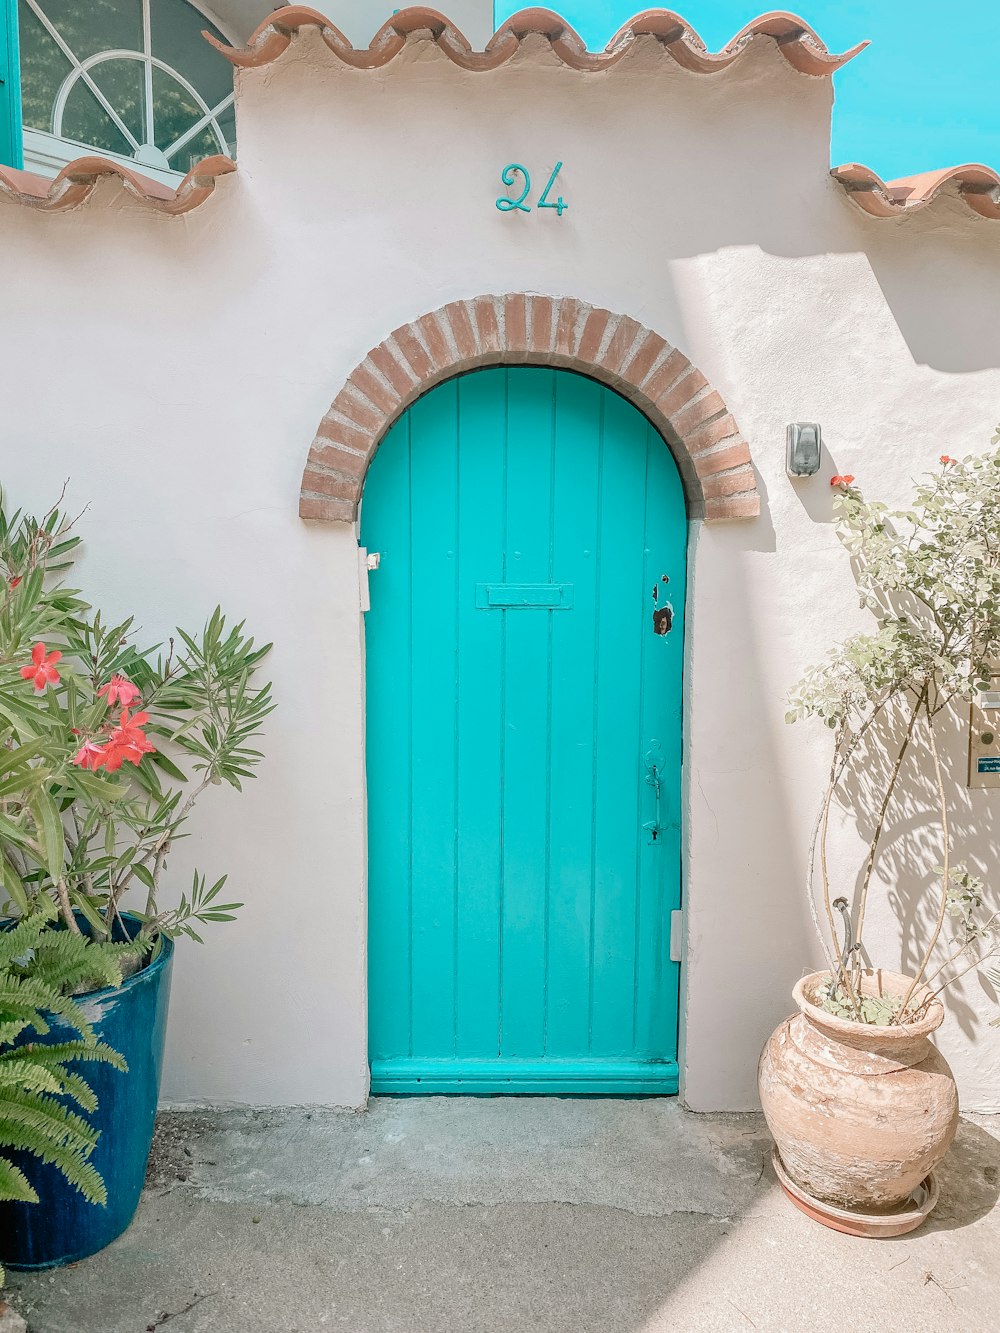 blue wooden door beside green potted plant